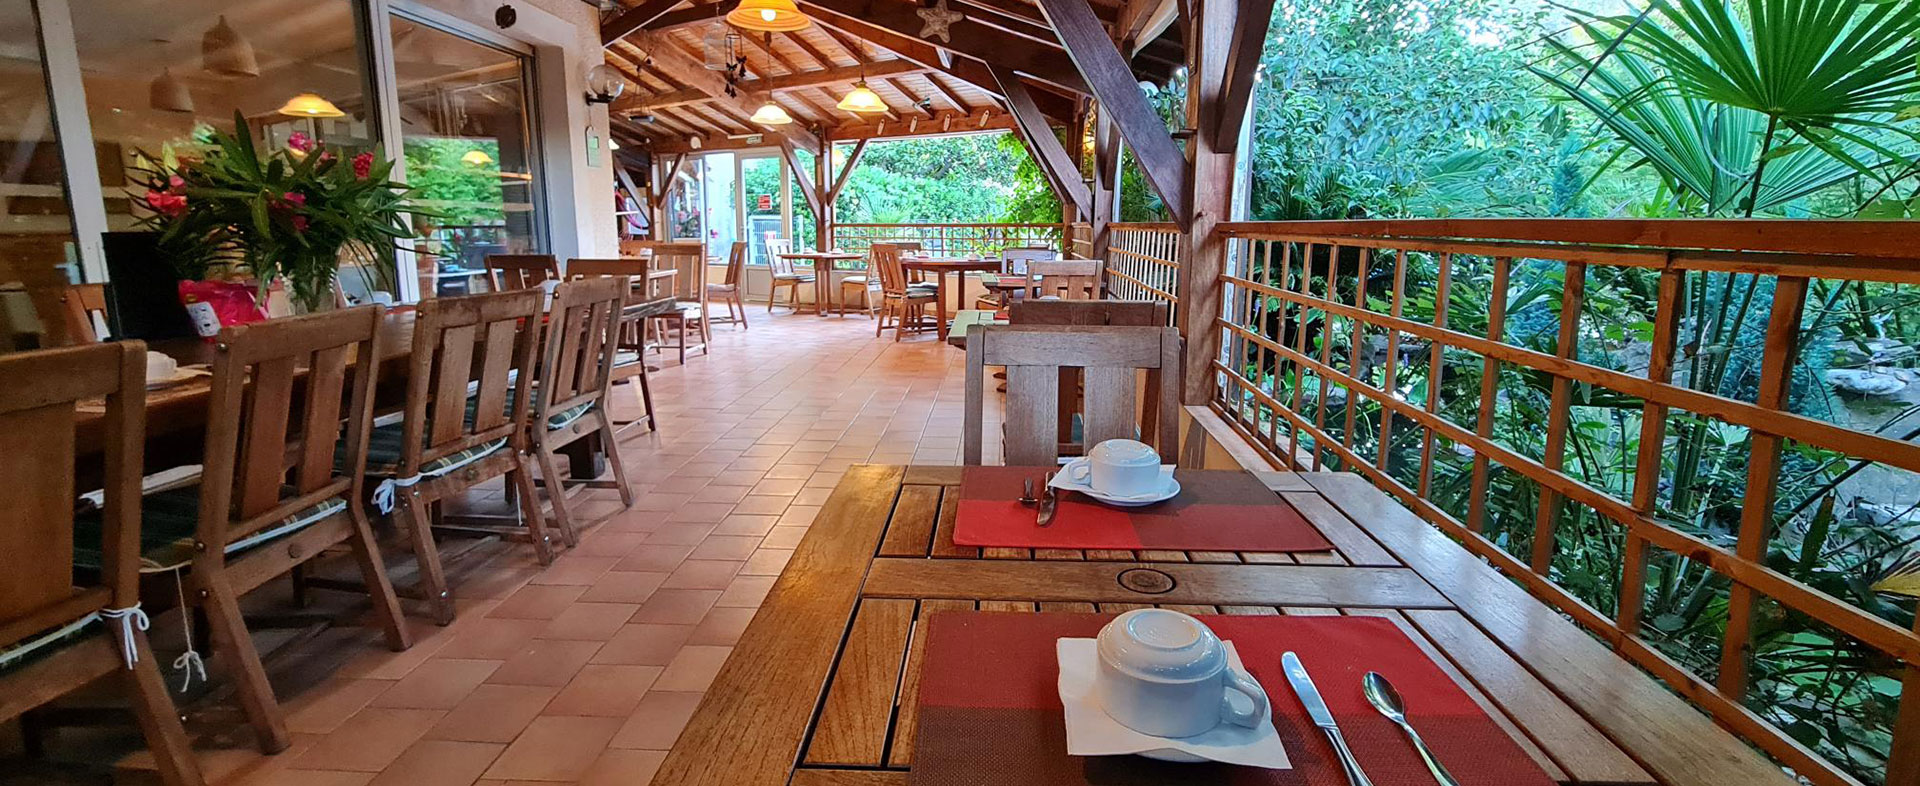 Salle de restaurant et terrasse à l'hôstellerie saint Benoit votre hôtel dans l'Hérault